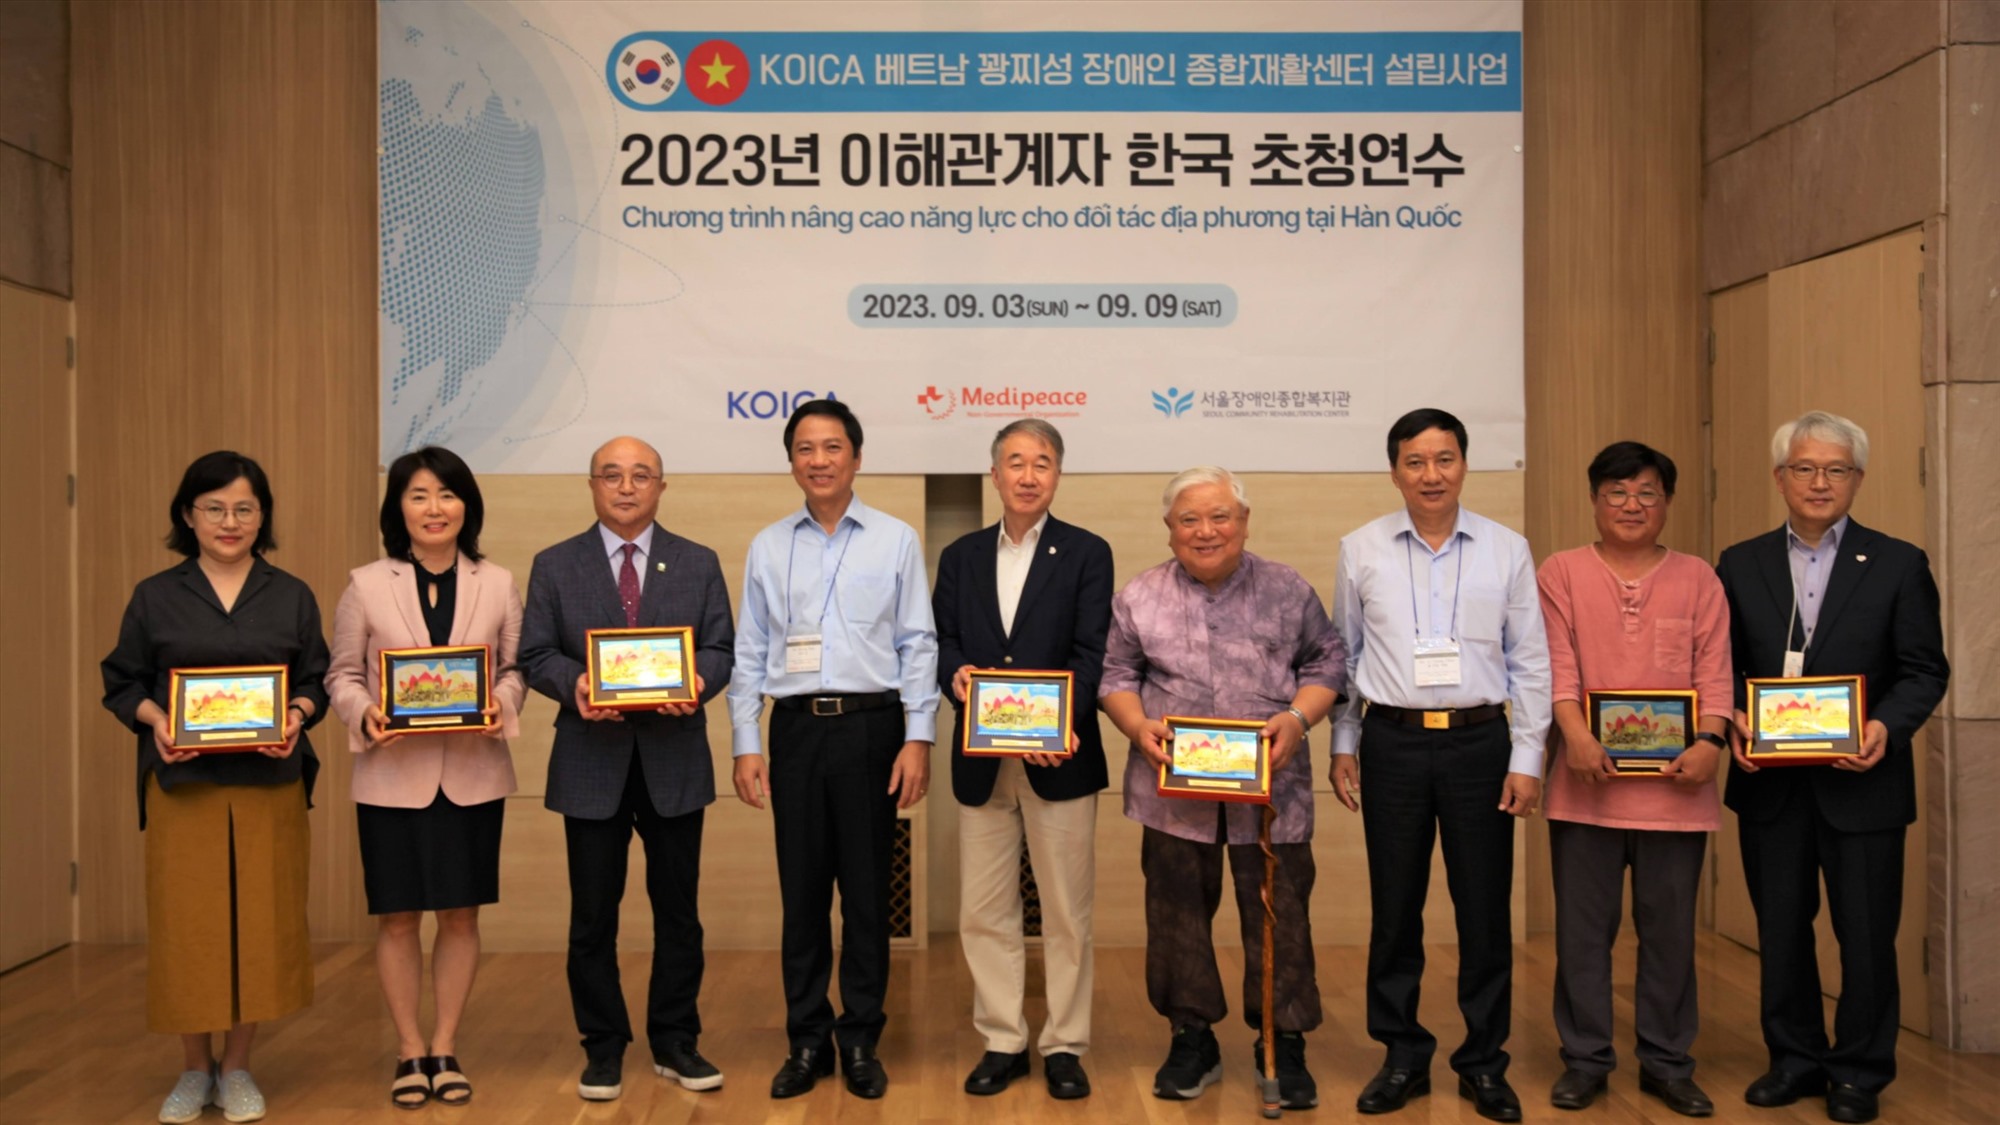 Đoàn công tác tỉnh Quảng Trị tặng quà lưu niệm cho các đối tác Hàn Quốc - Ảnh: Văn Biên